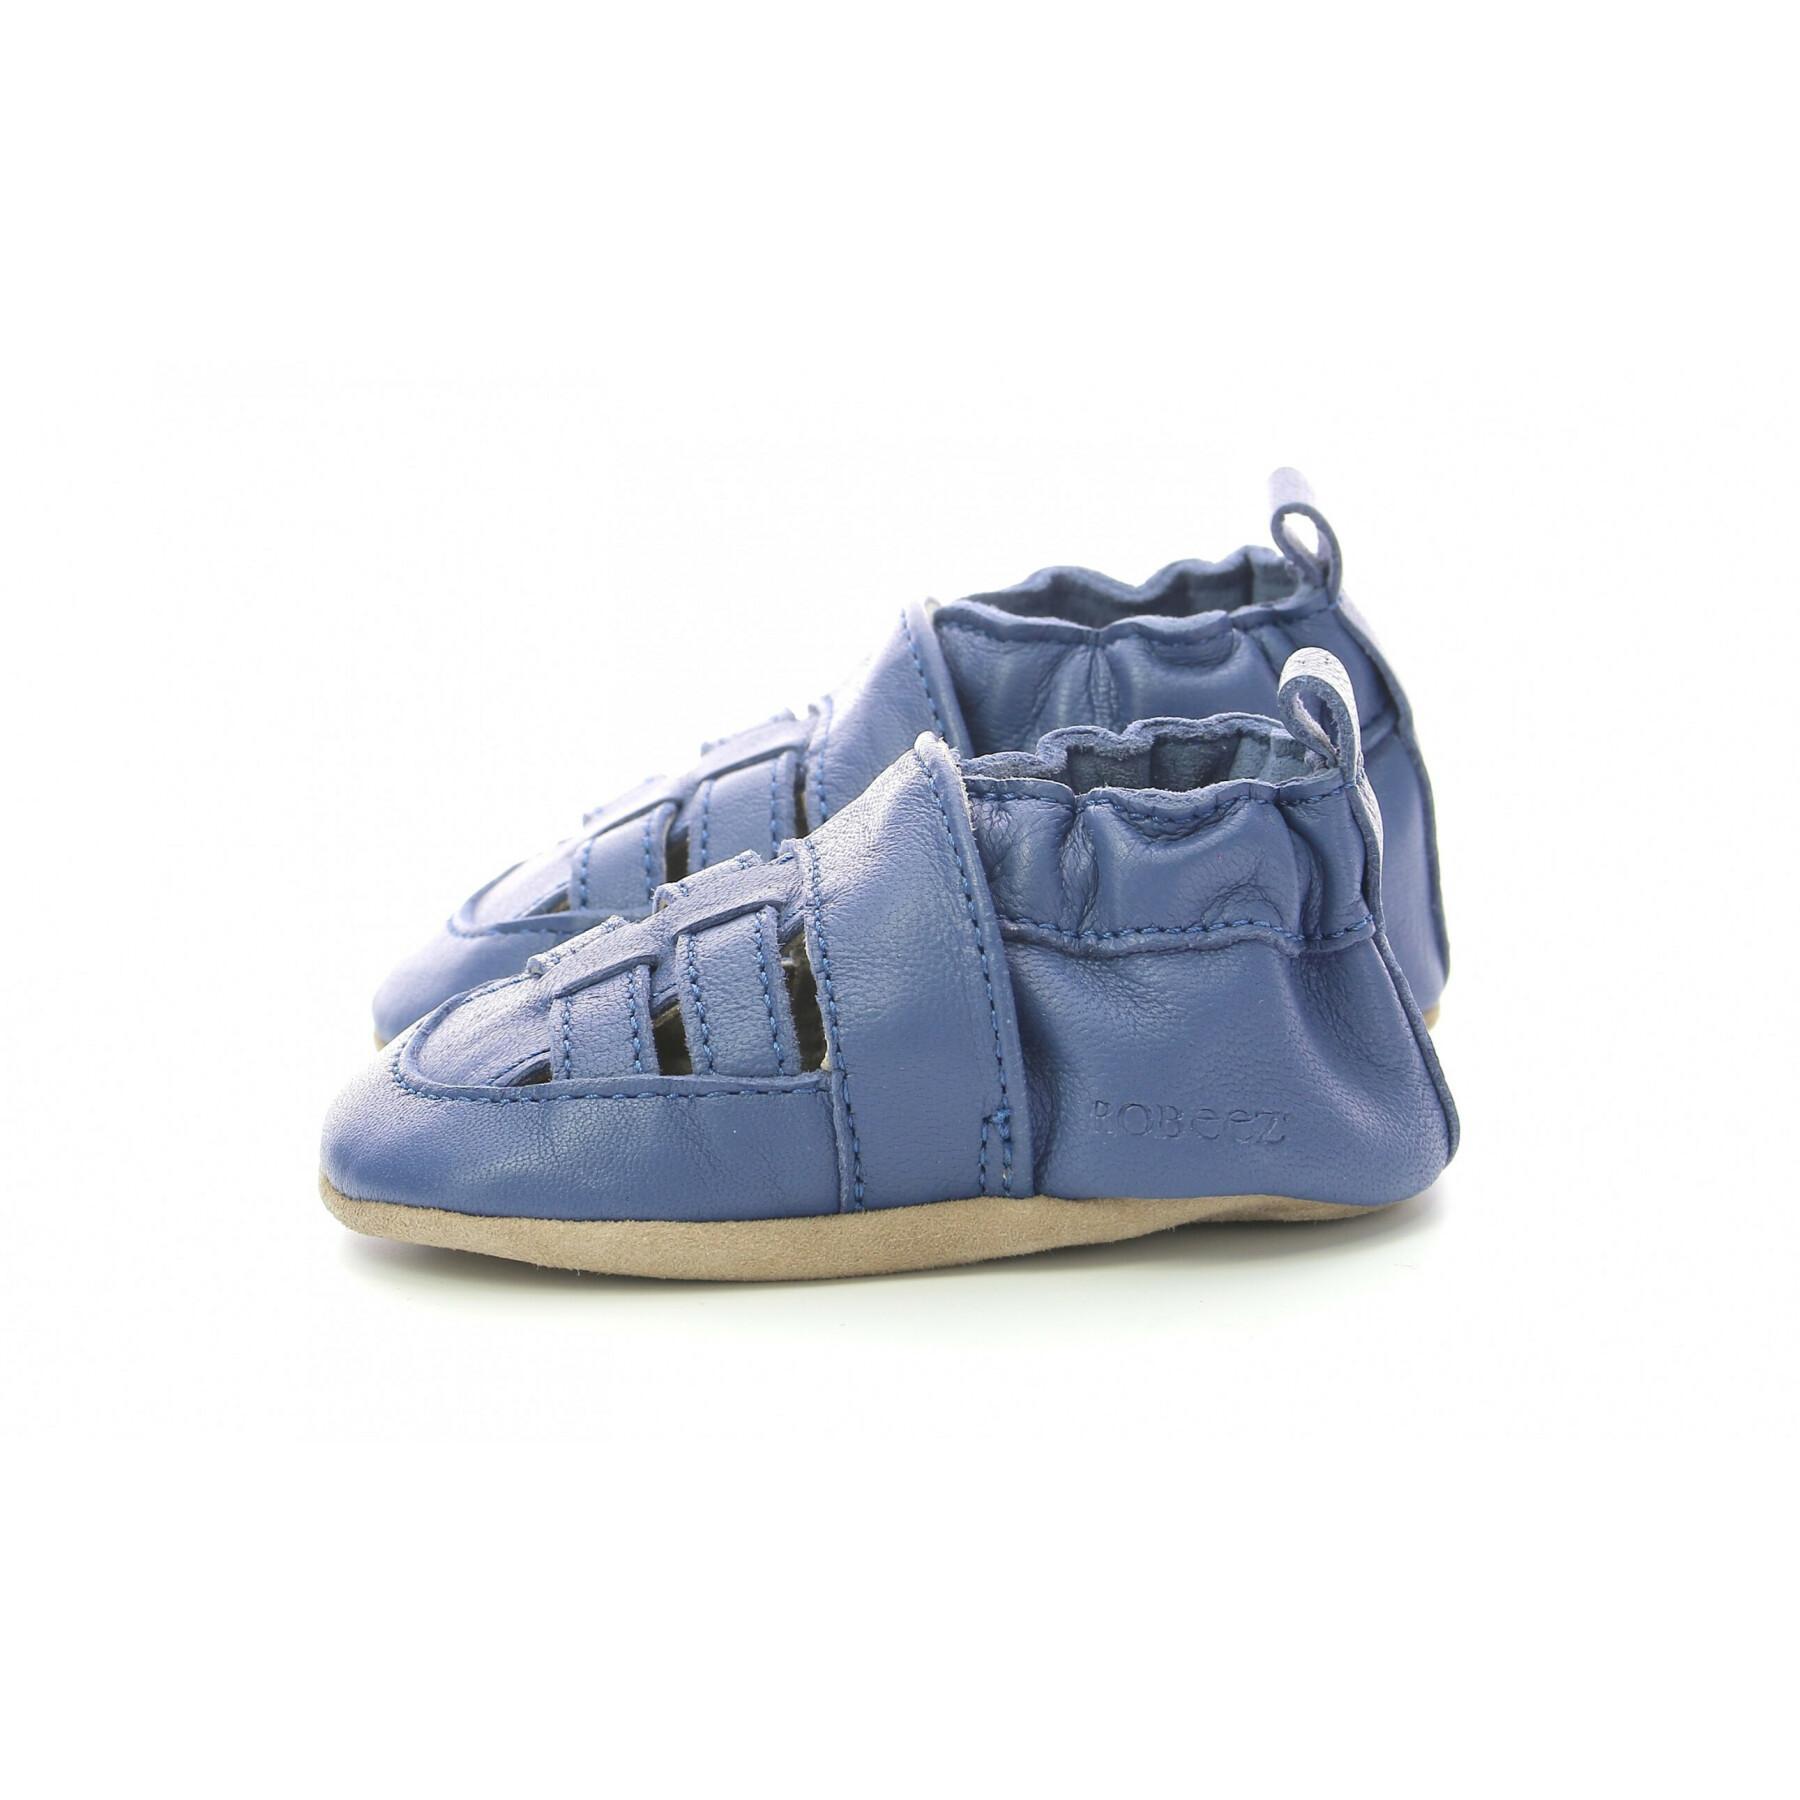 Sapatos de bebê Robeez Sandiz Veg